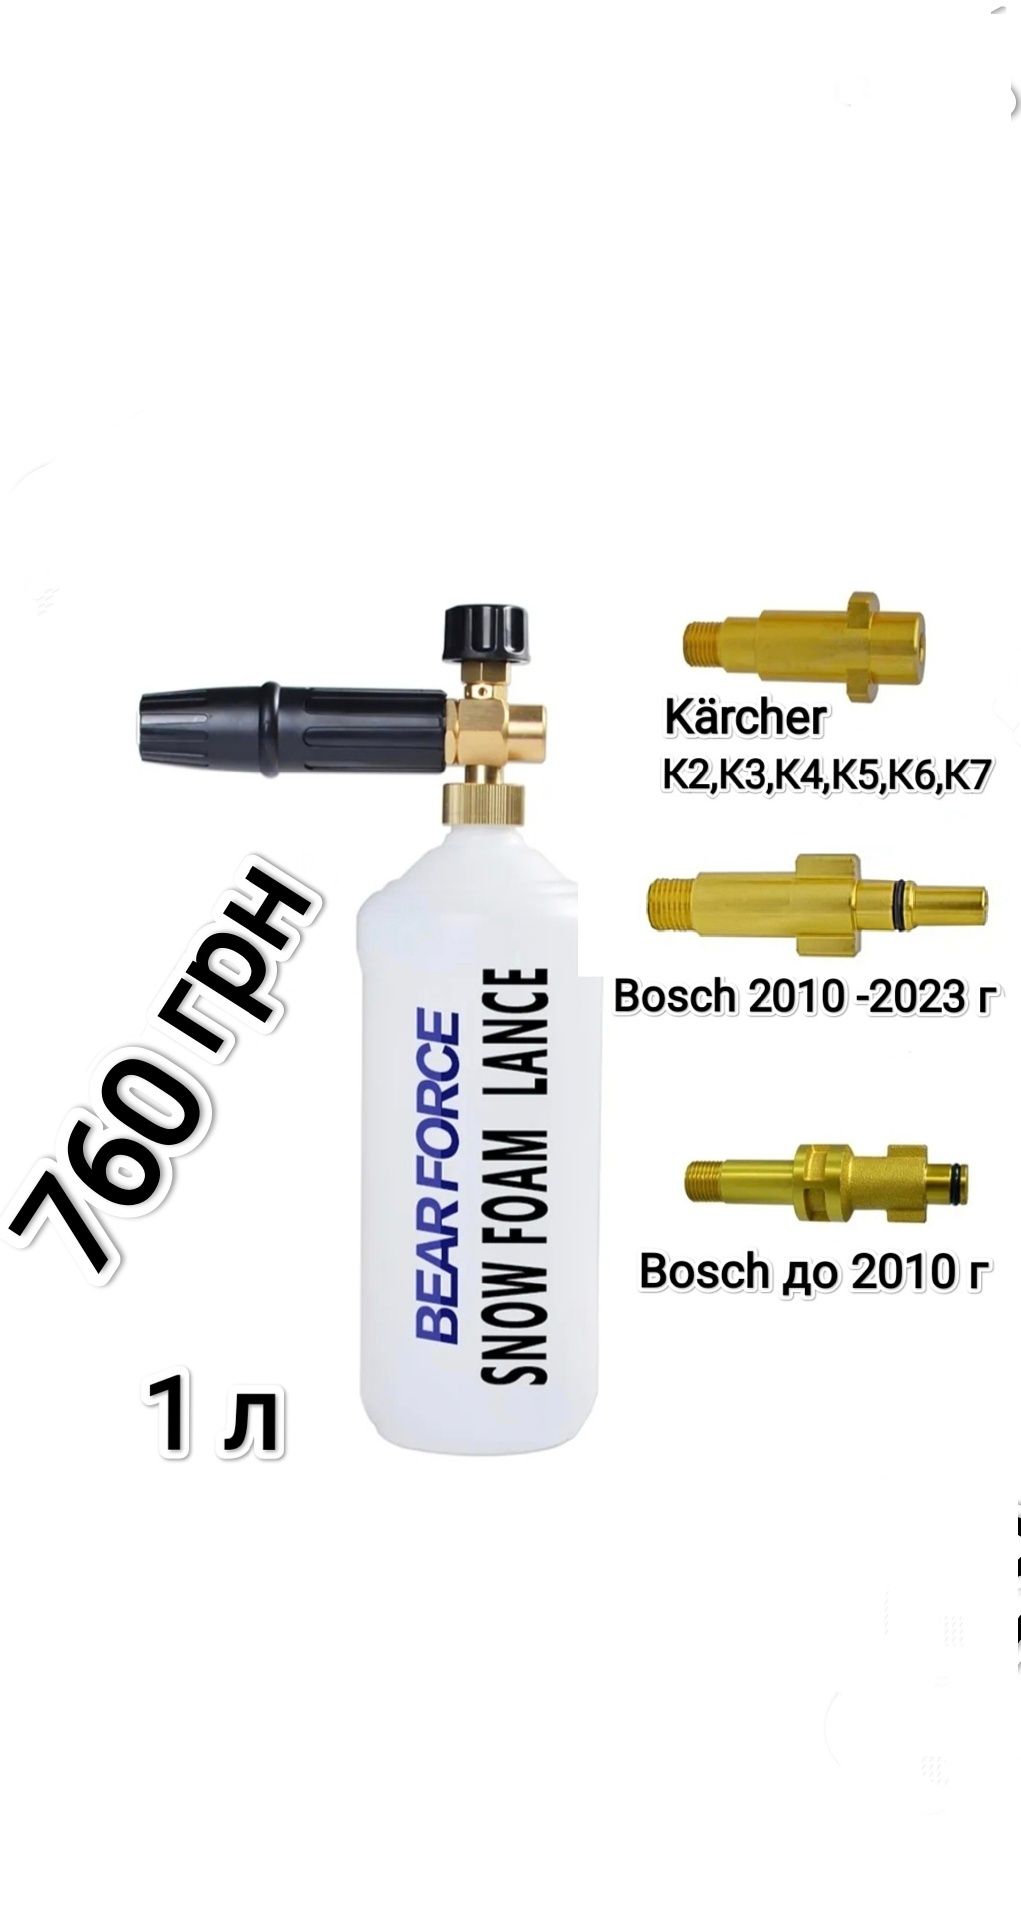 Пенник,пенная насадка для мойки Karcher K2 K3 K4 K5 K6,Bosch,Бош